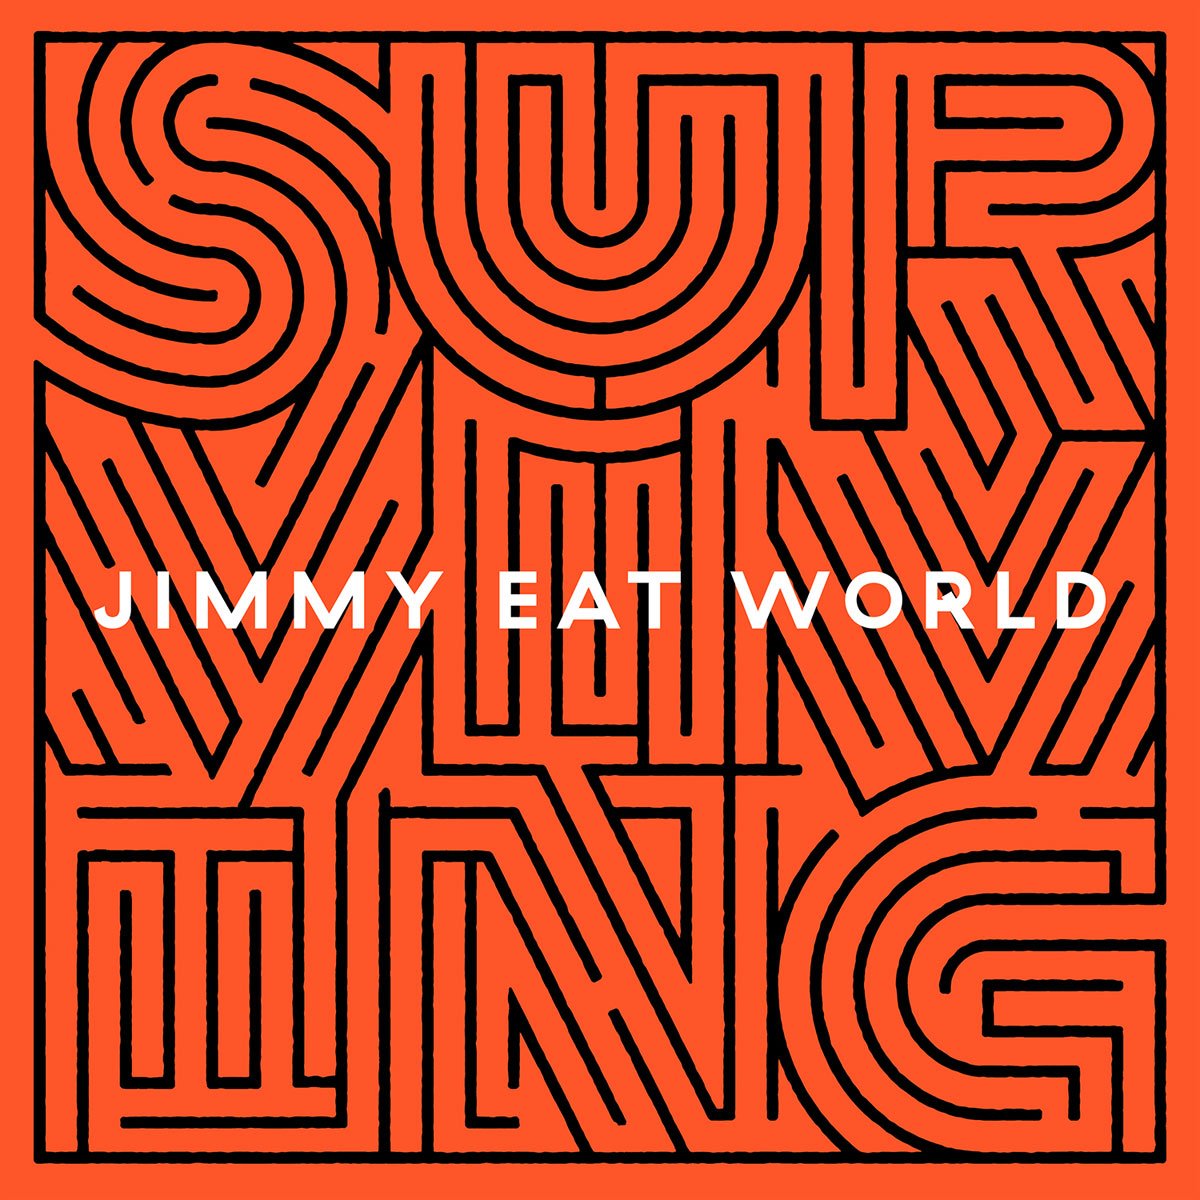 ALBUM REVIEW: Jimmy Eat World - Surviving 